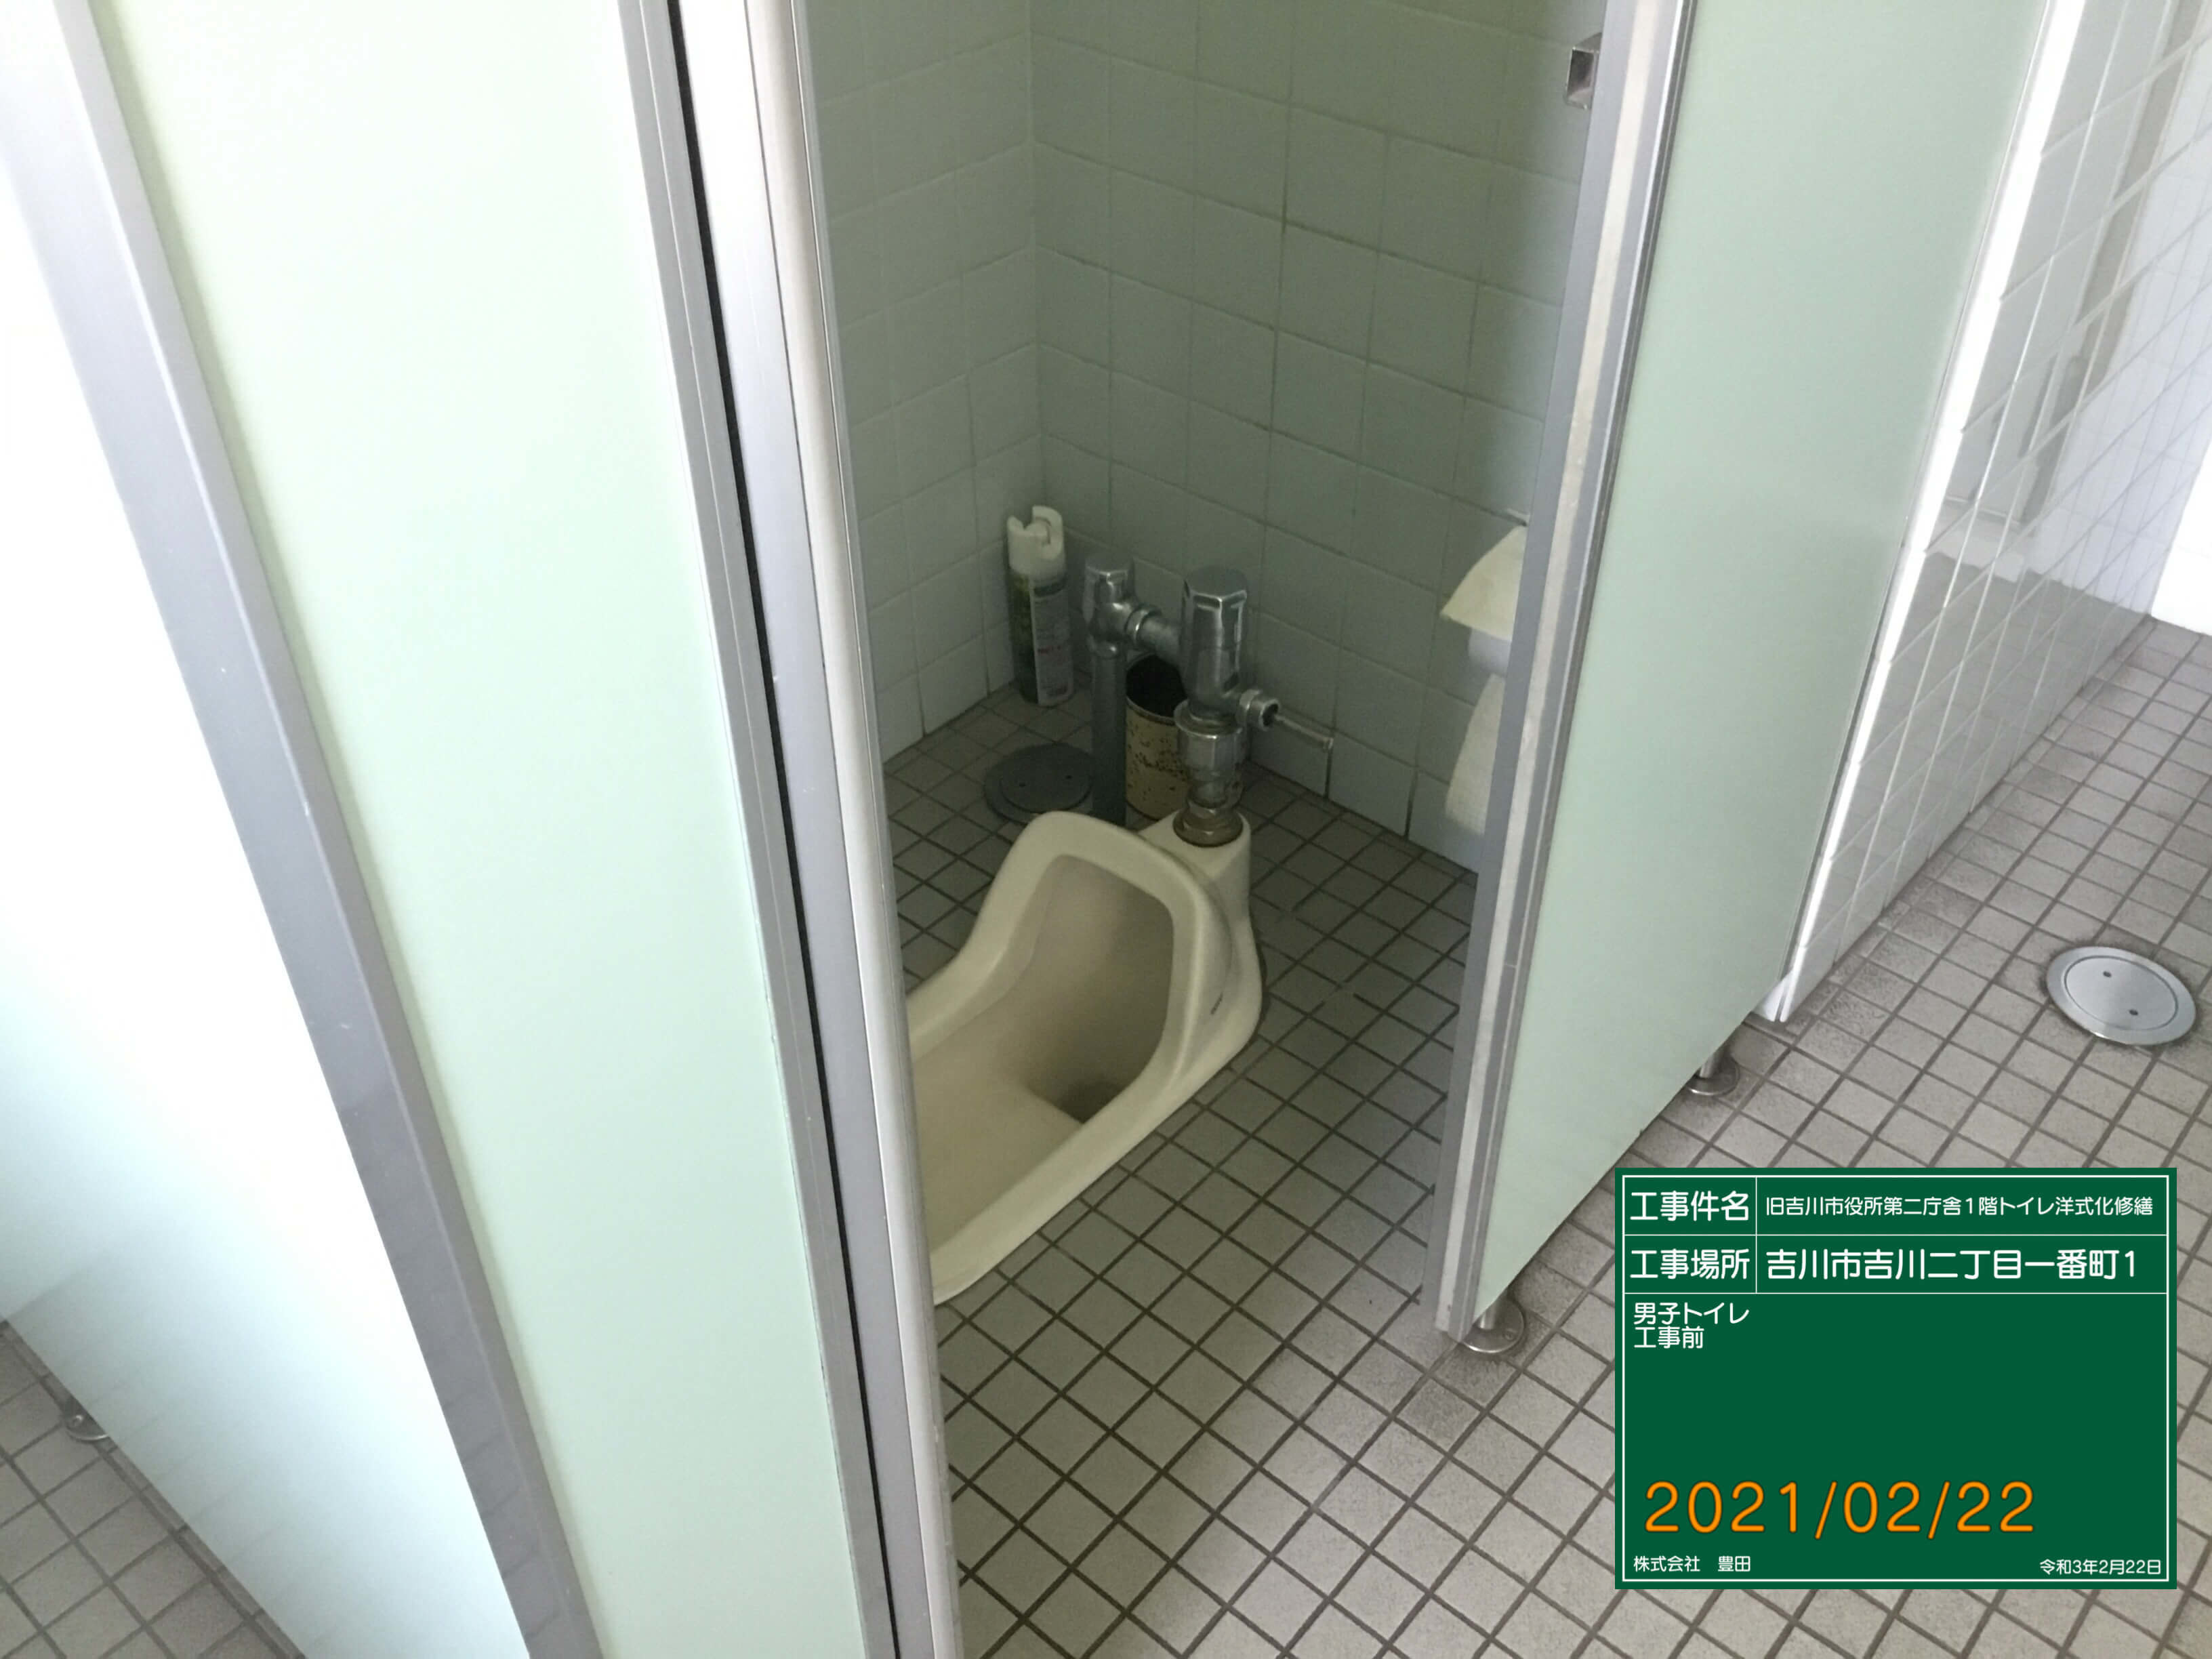 吉川市第二庁舎トイレ洋式化修繕